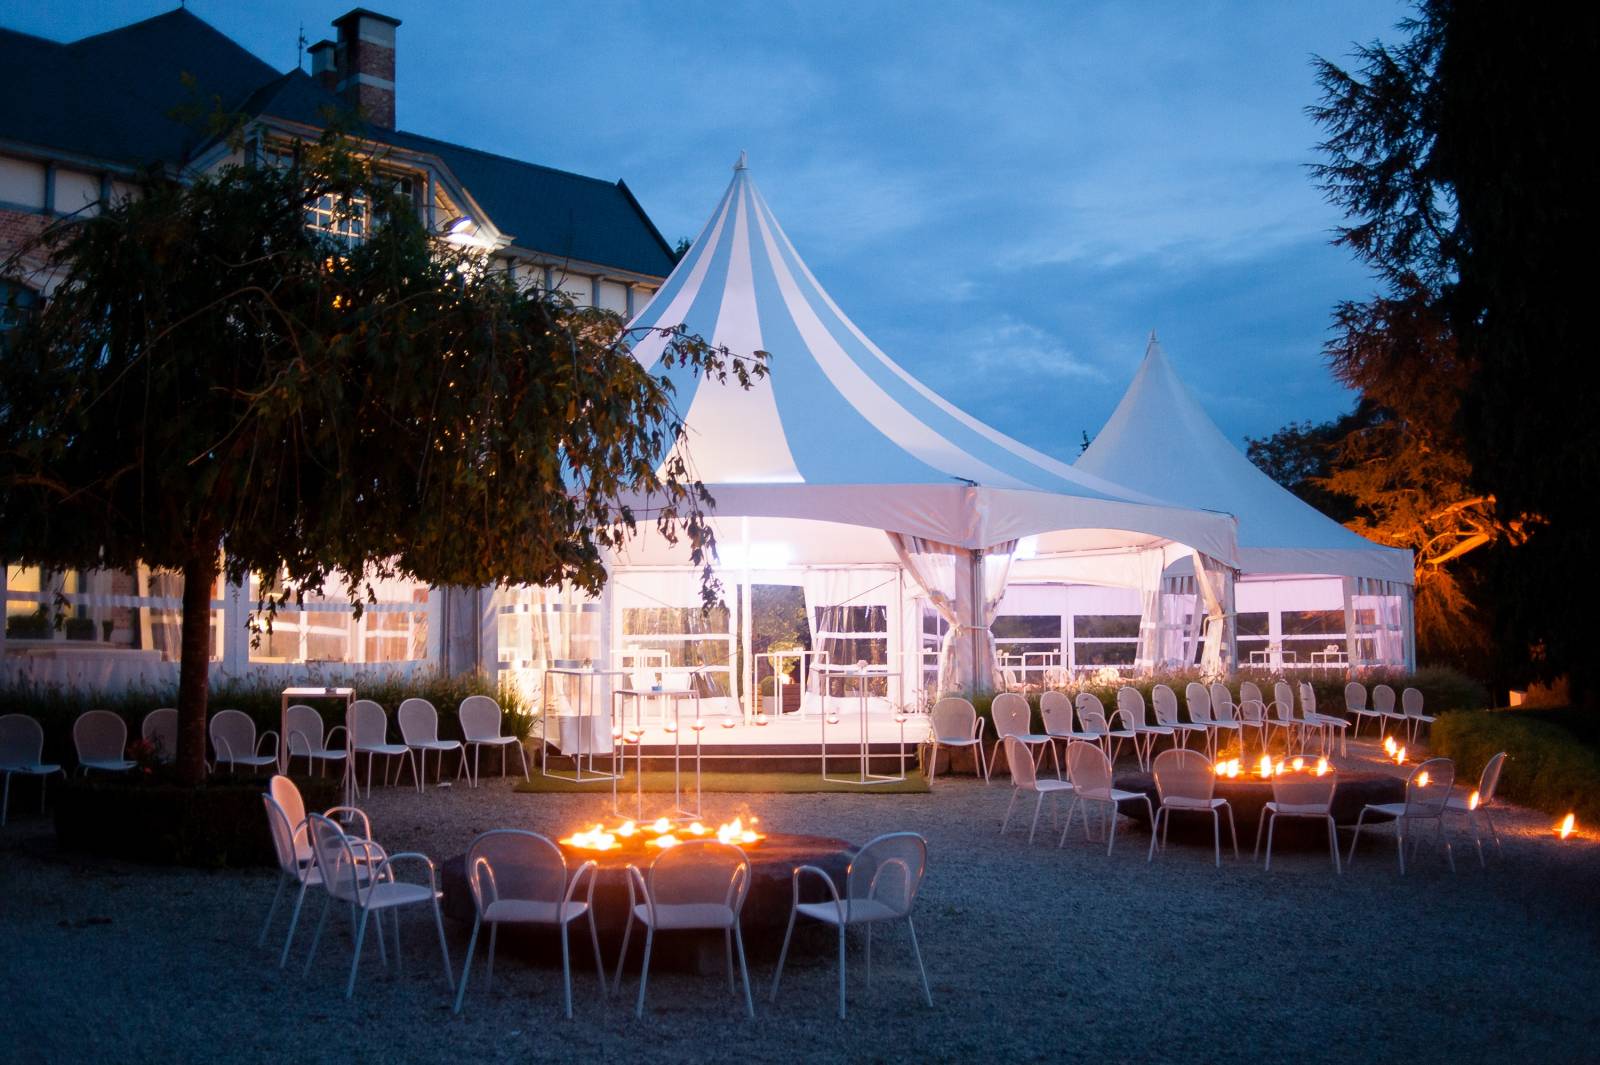 Domein Saint-Hubert - House of Weddings - Feestzaal Oost-Vlaanderen - Ronse - huwelijk - ceremonie cateri (21)